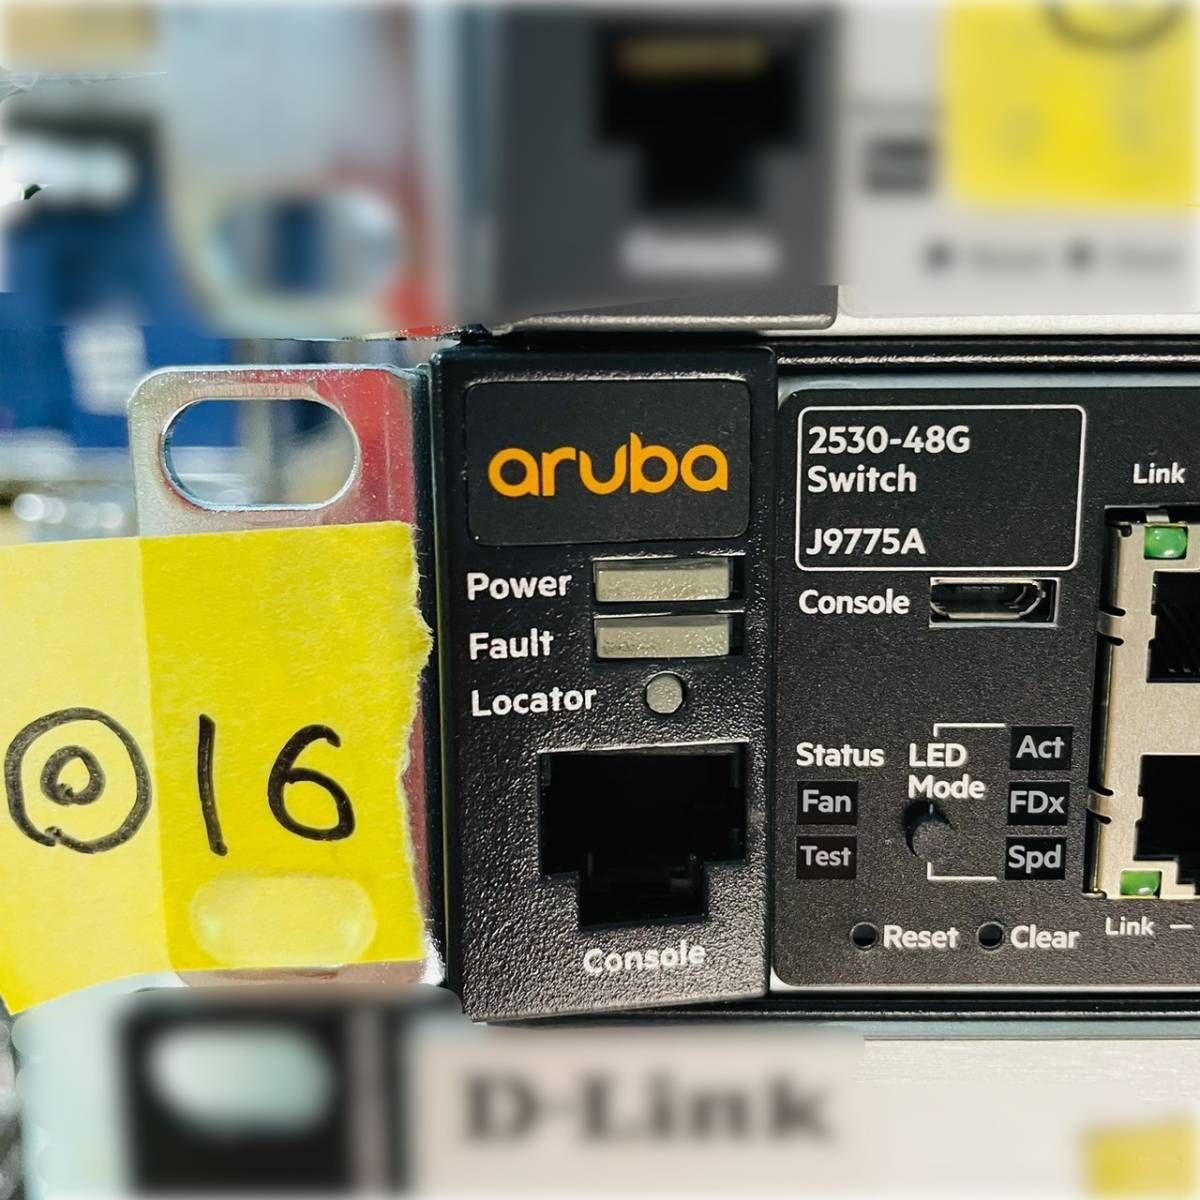 ◎16【通電OK】aruba 2530-48G Switch J9775A HP ヒューレットパッカード ネットワーク ハブ インターネット 回線 通信機器 機材の画像1